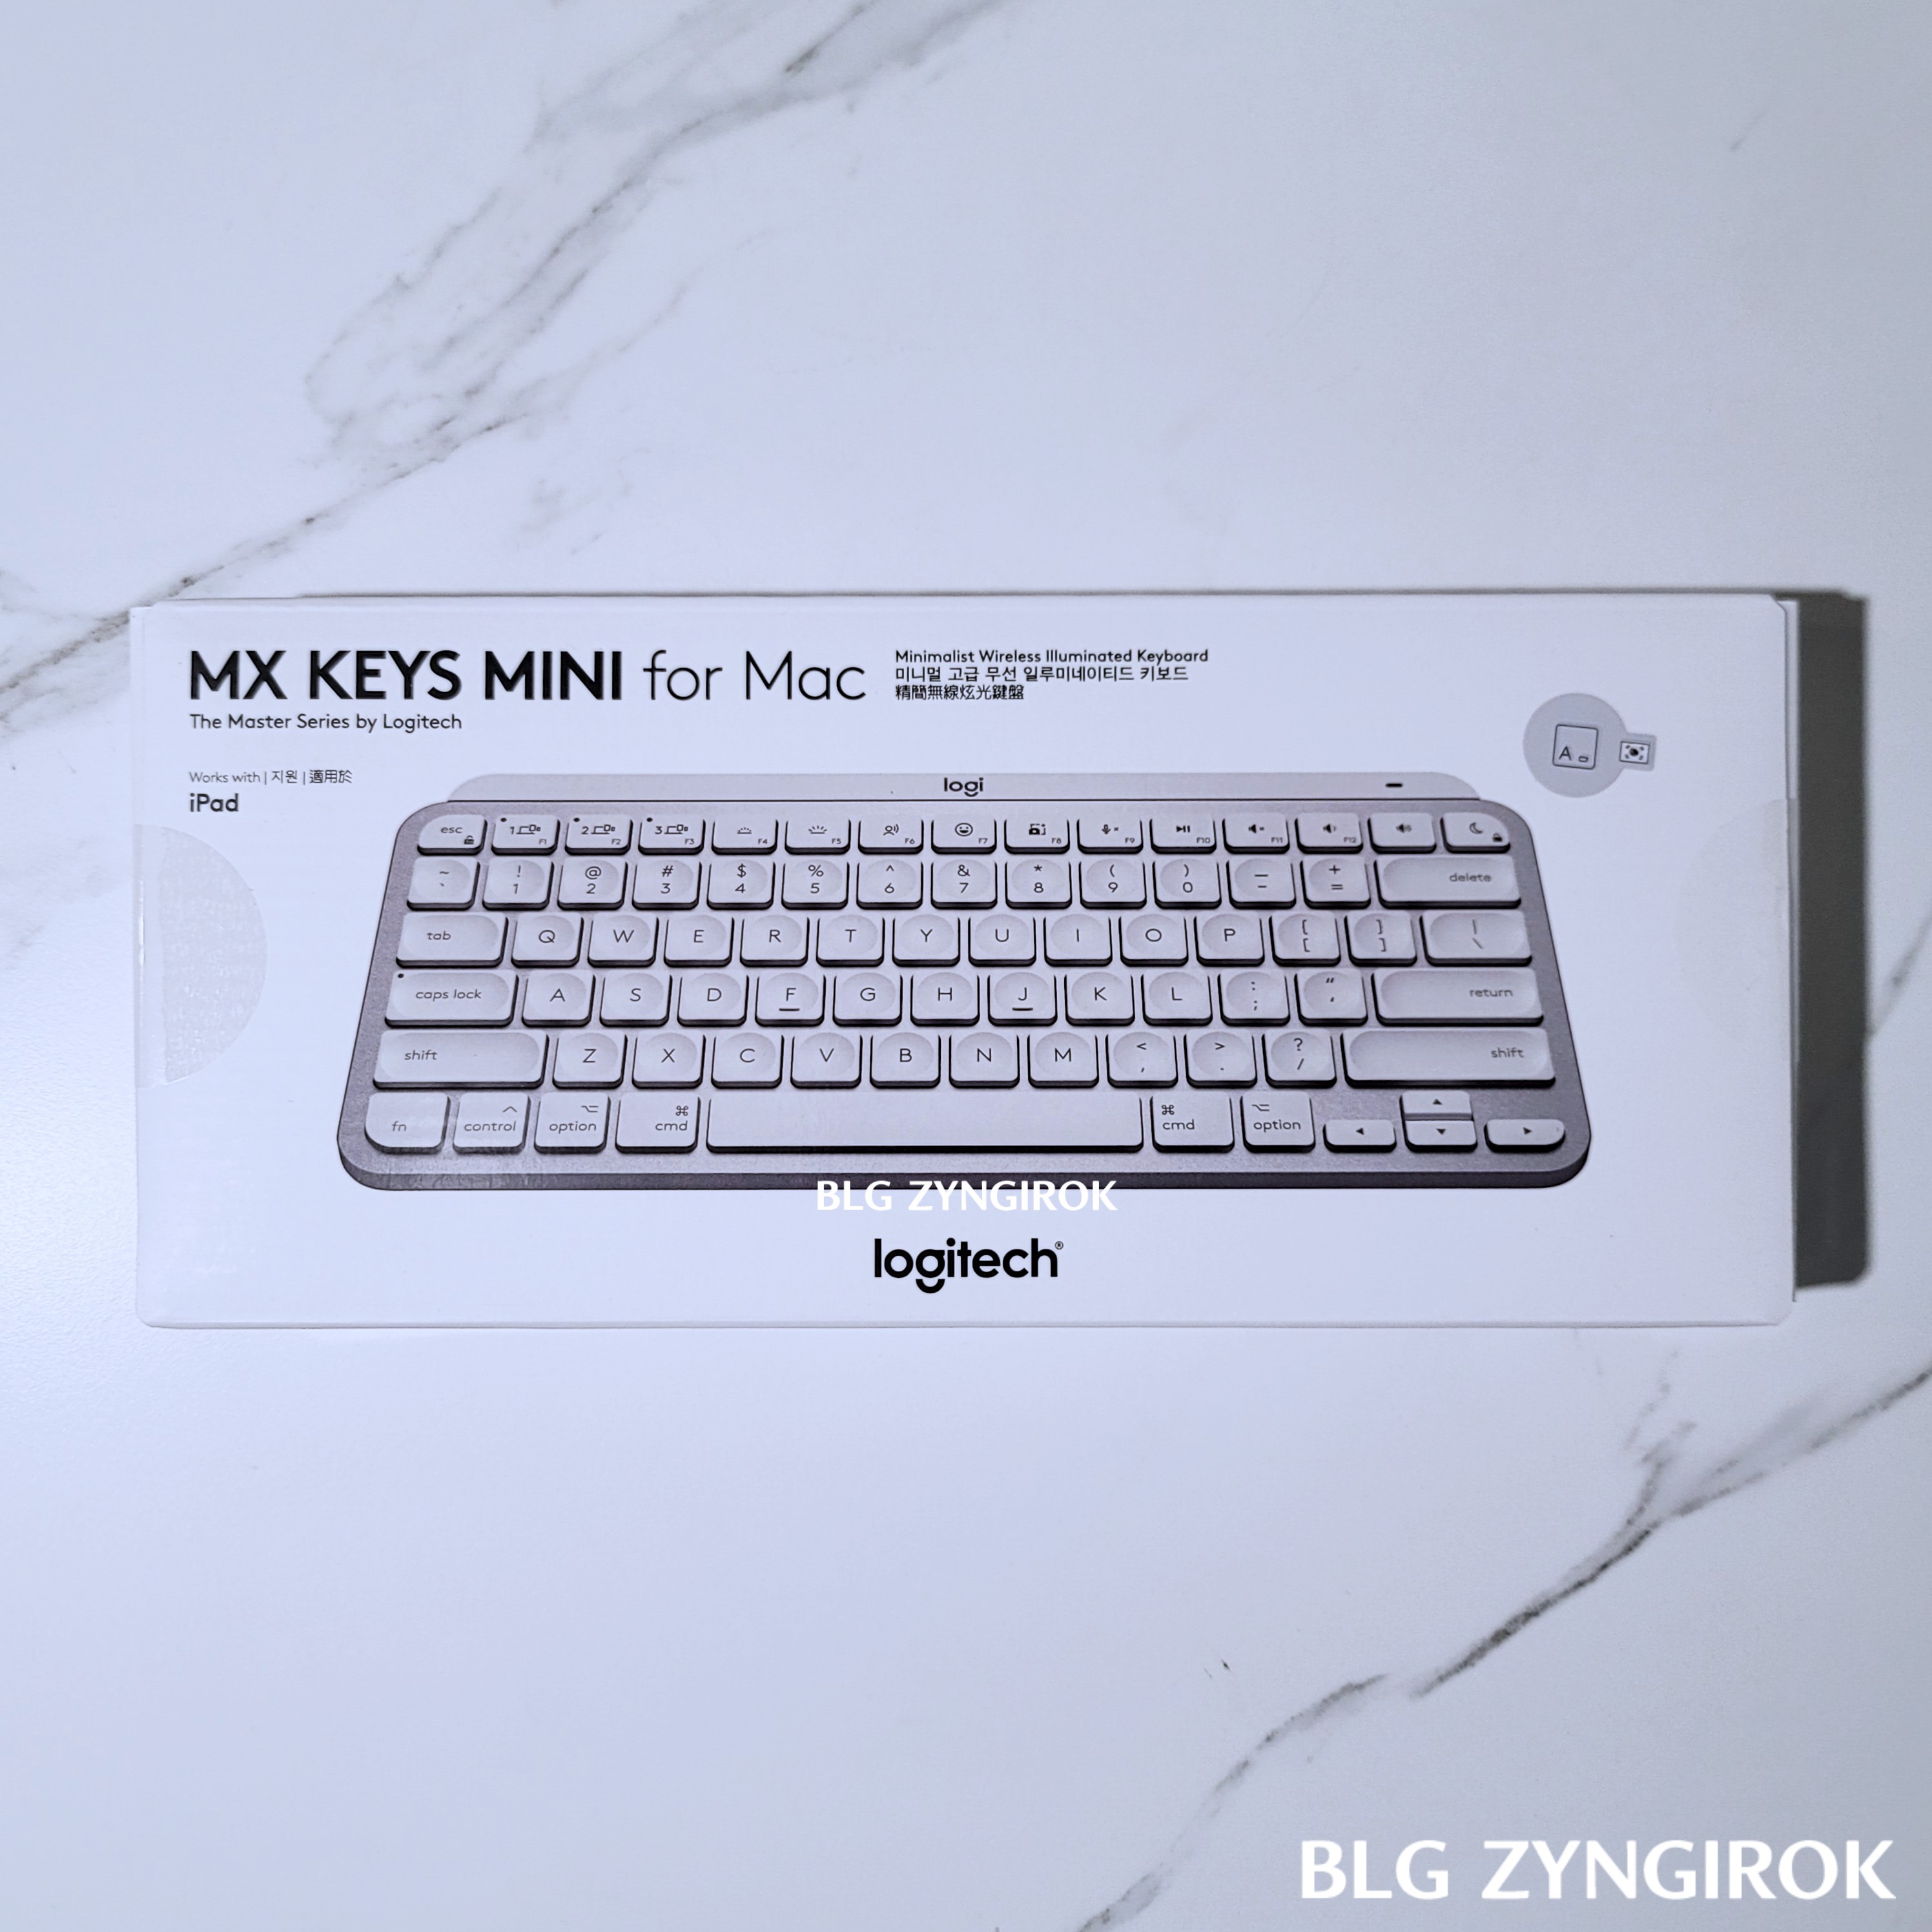 로지텍 MX Keys MINI 상자가 테이블 위에 놓여있다.